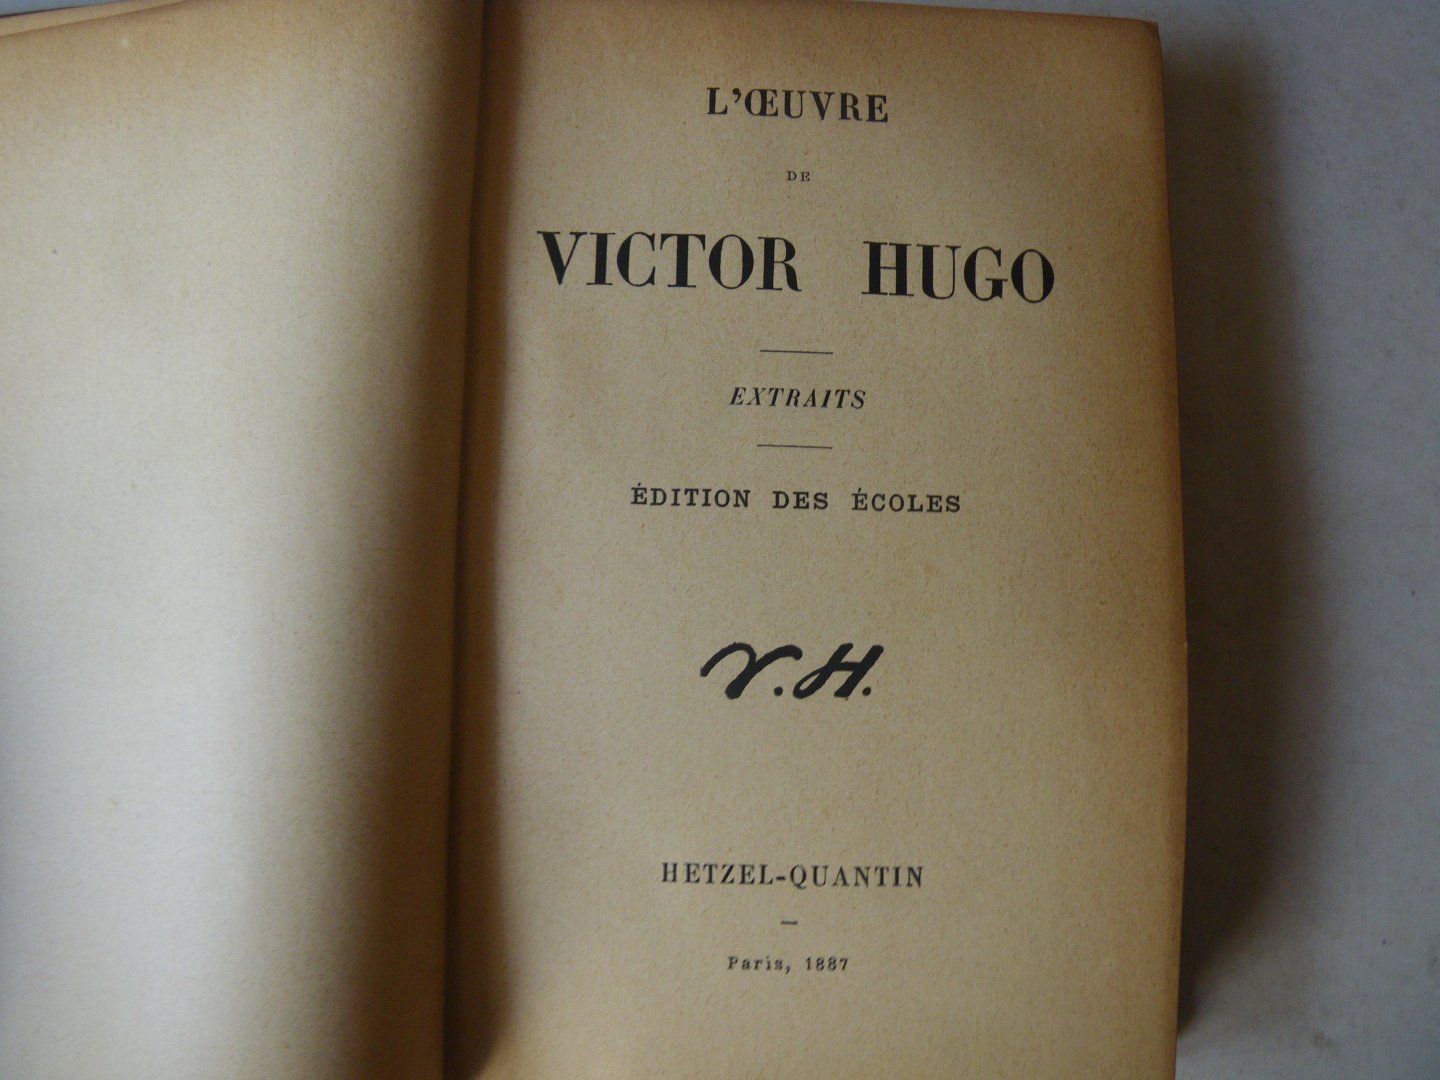  - L'OEuvre de Victor Hugo, extraits edition des ecoles